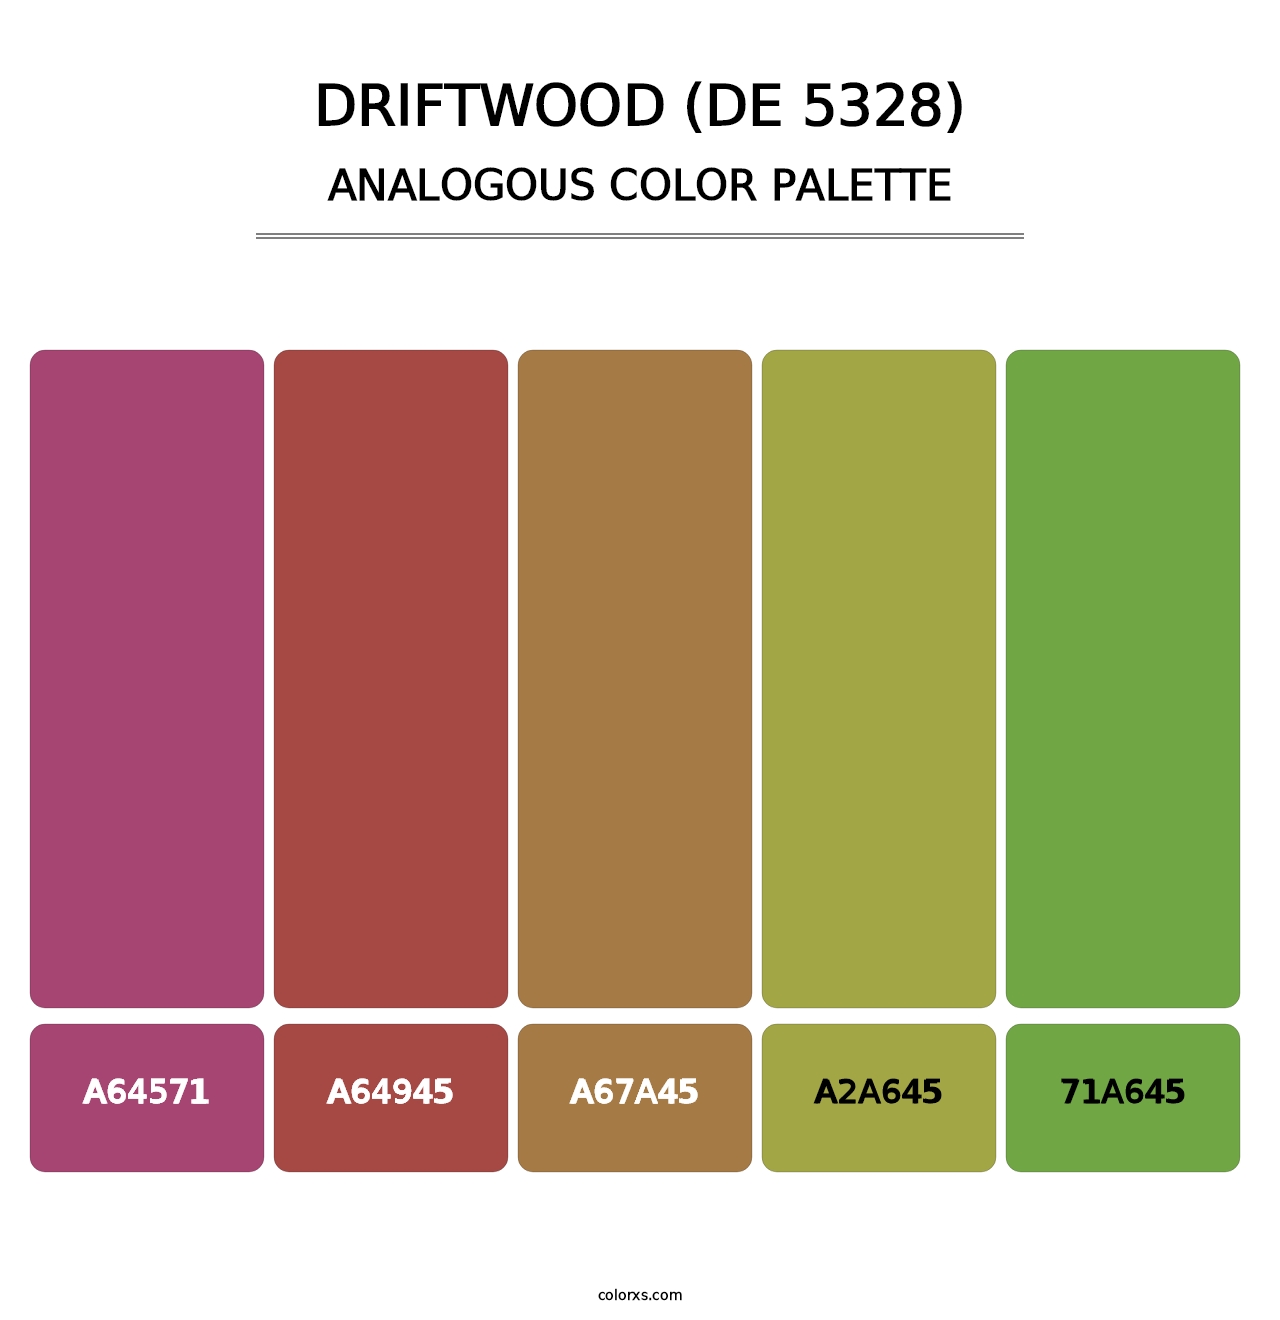 Driftwood (DE 5328) - Analogous Color Palette